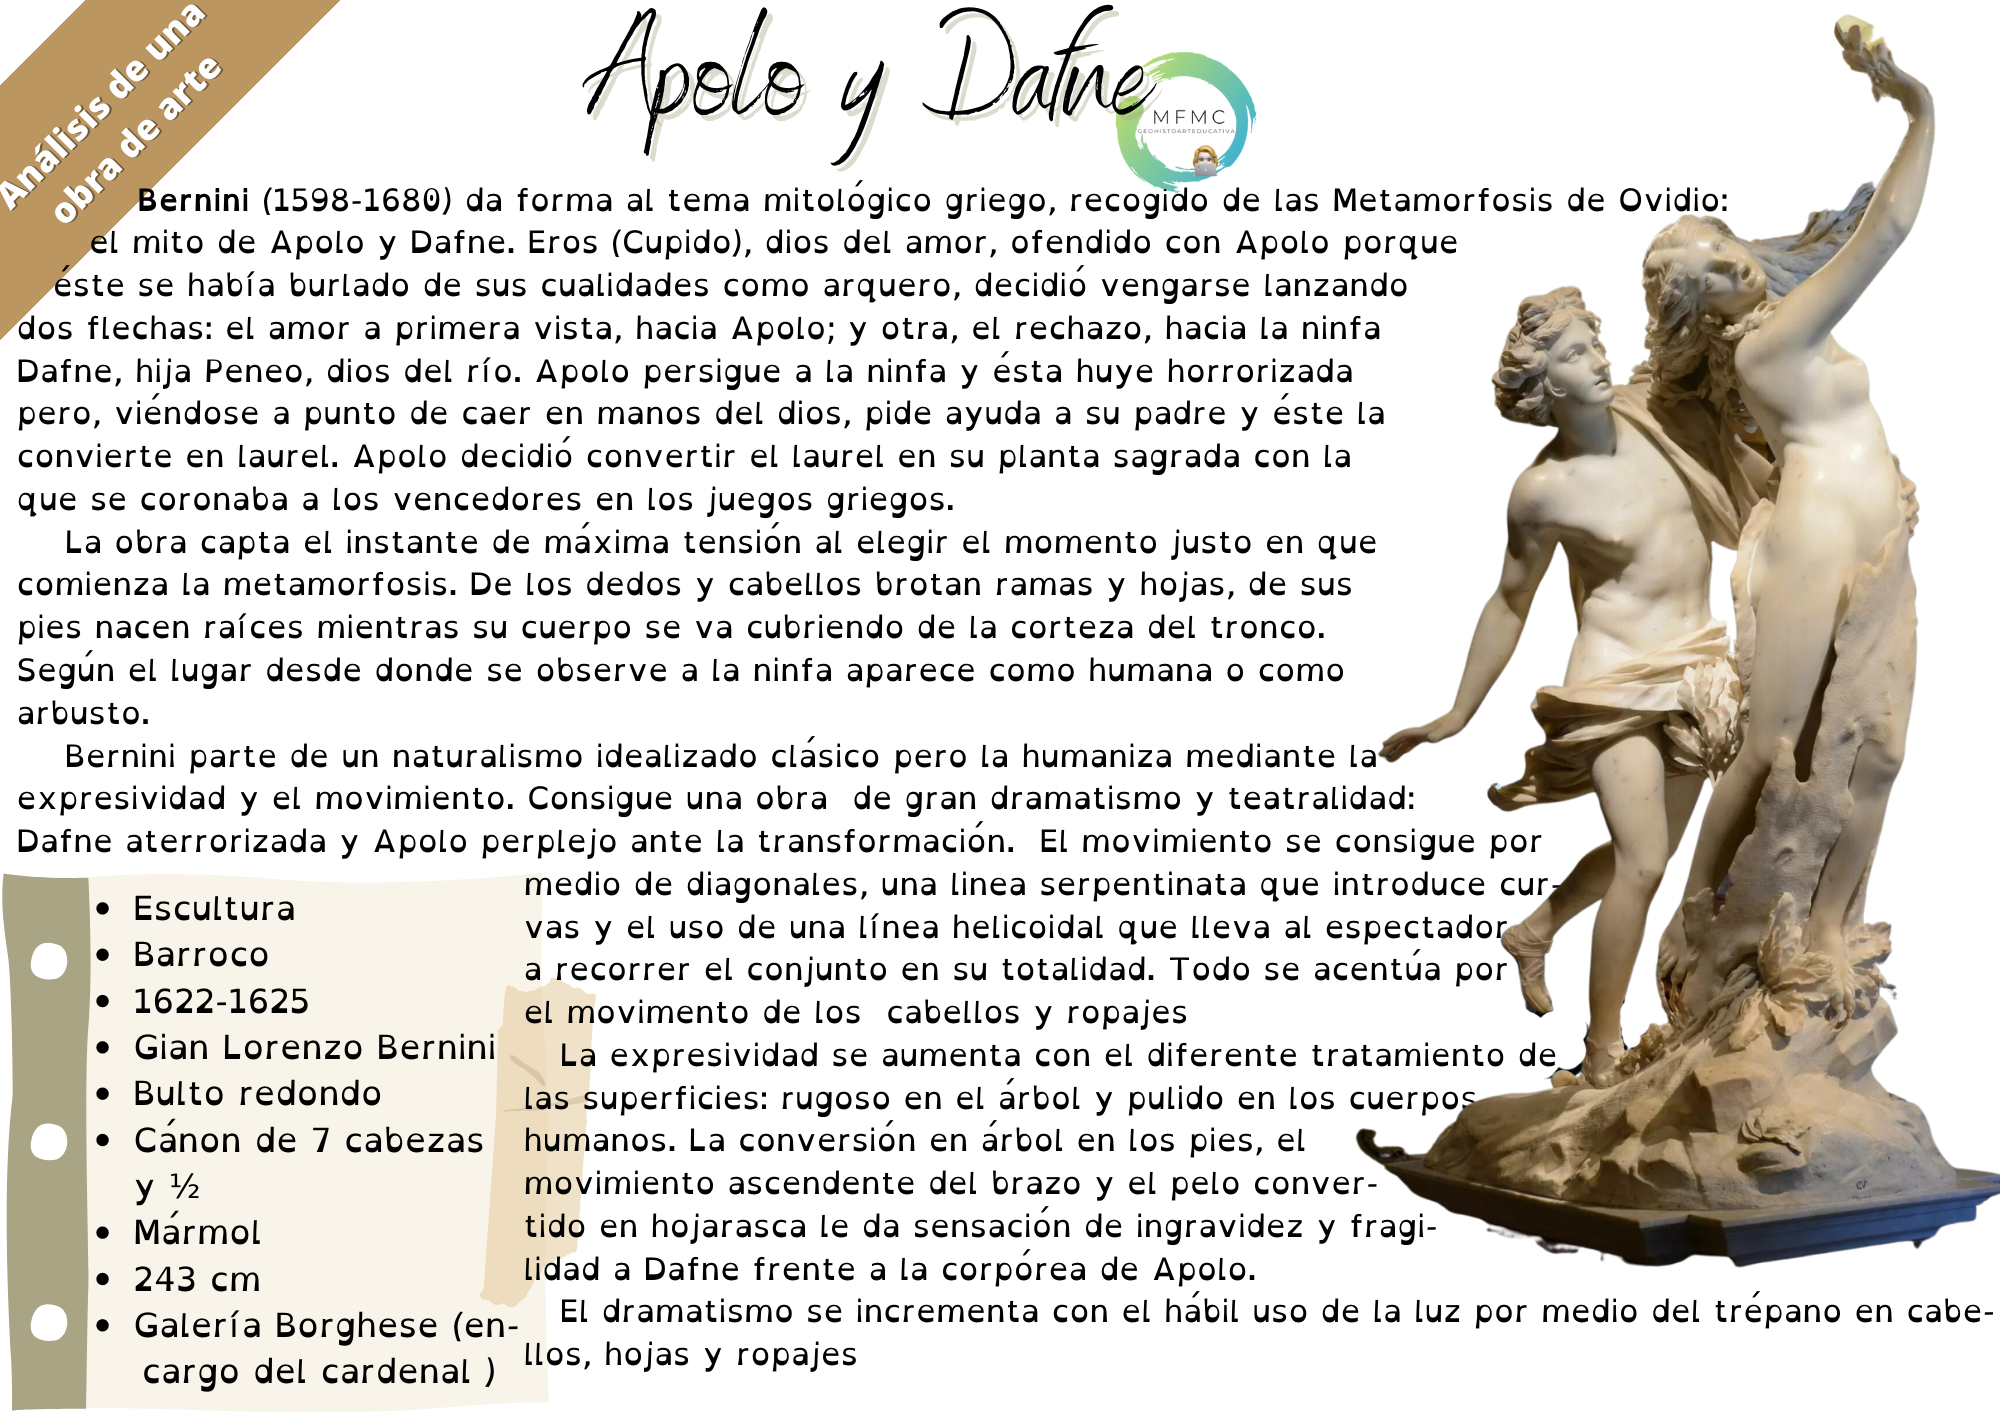 Apolo y Dafne